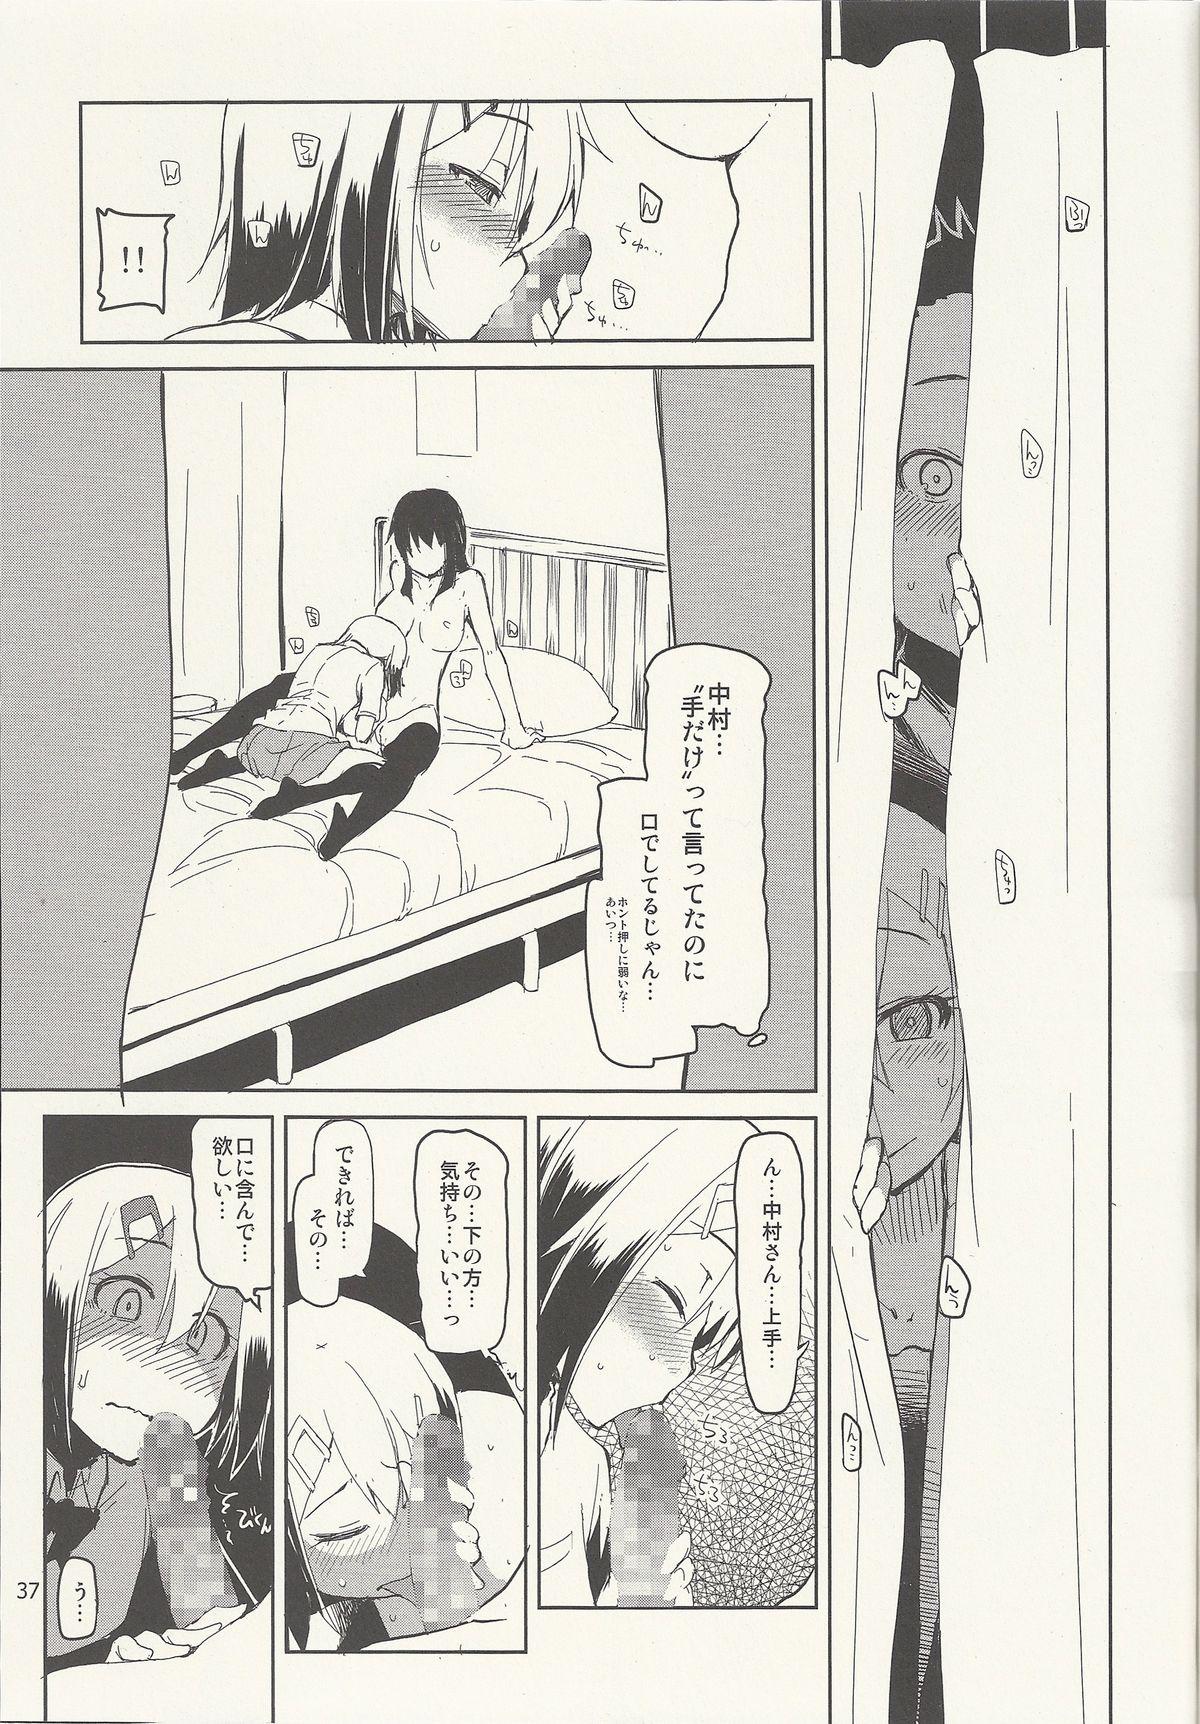 Natsuzuka-san no Himitsu. Vol. 6 Kanketsu Hen 37